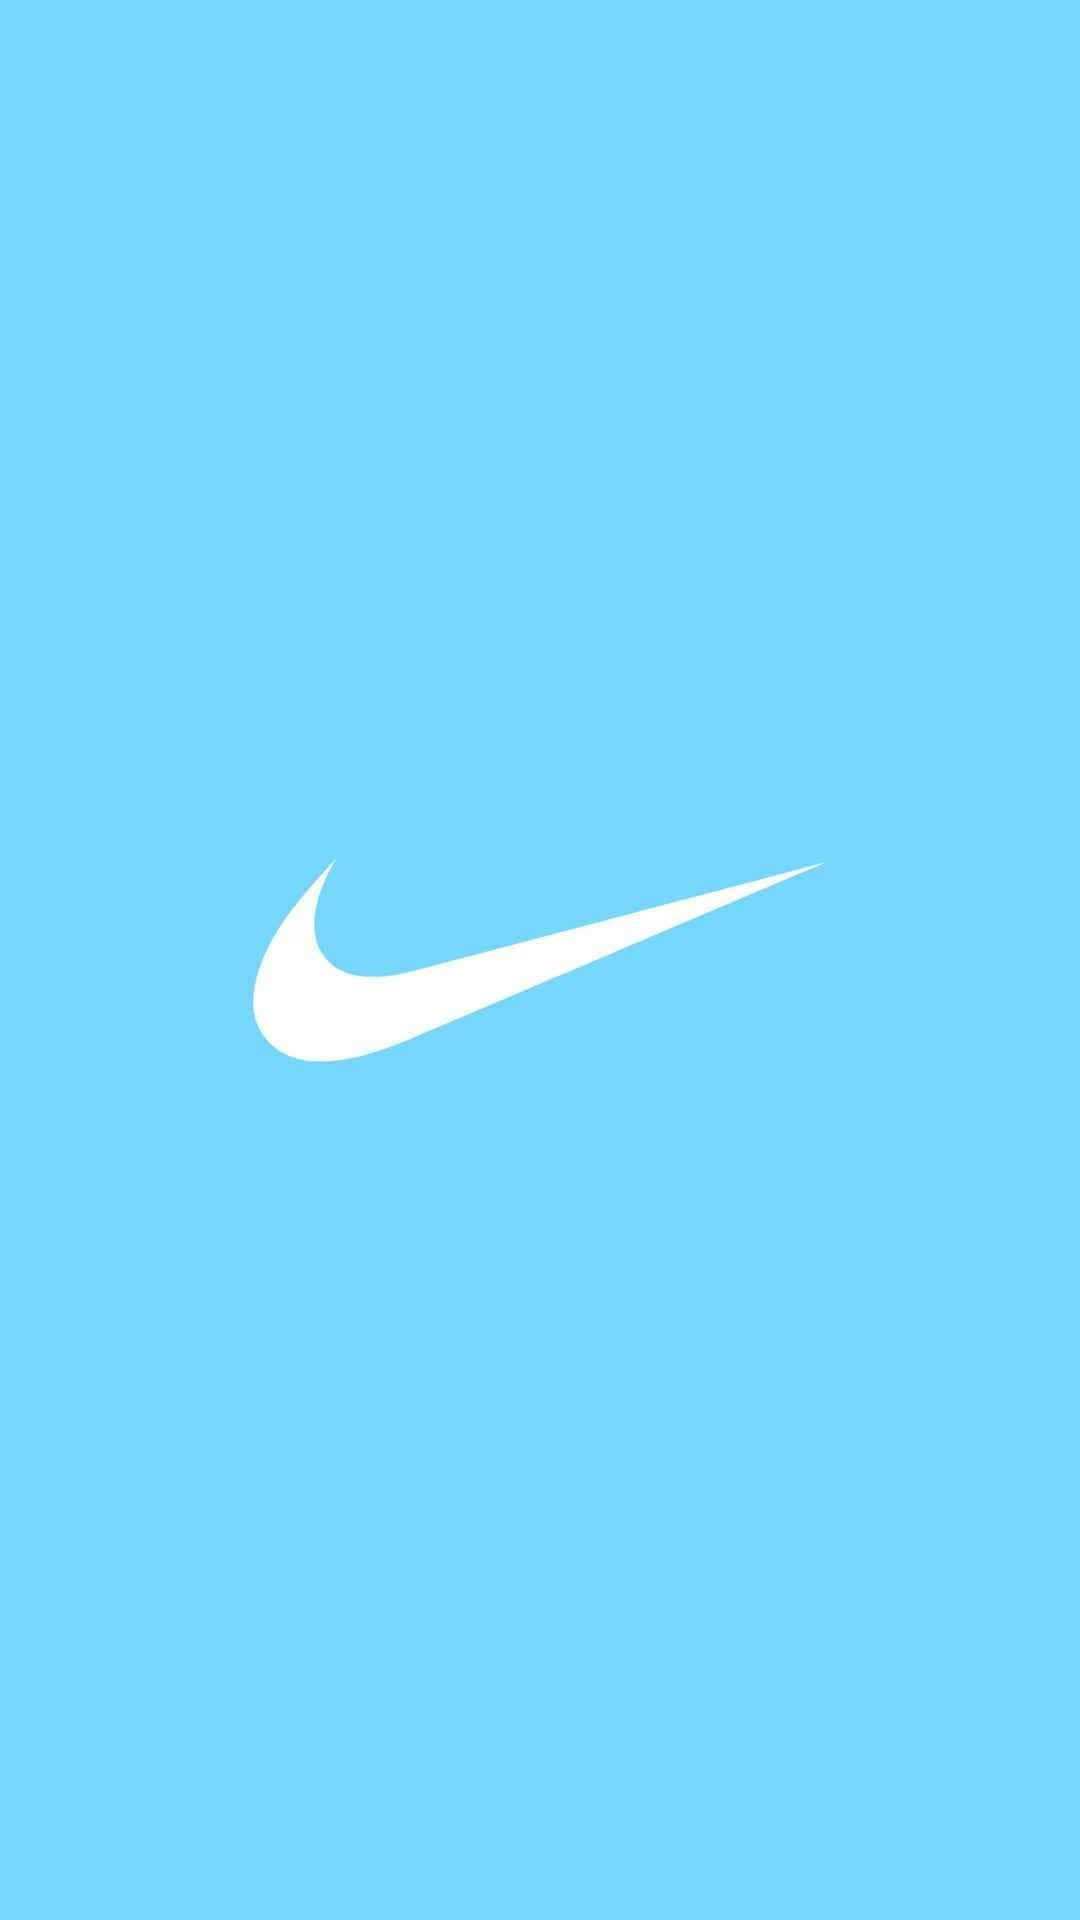 Logotipode Nike En Azul. Fondo de pantalla